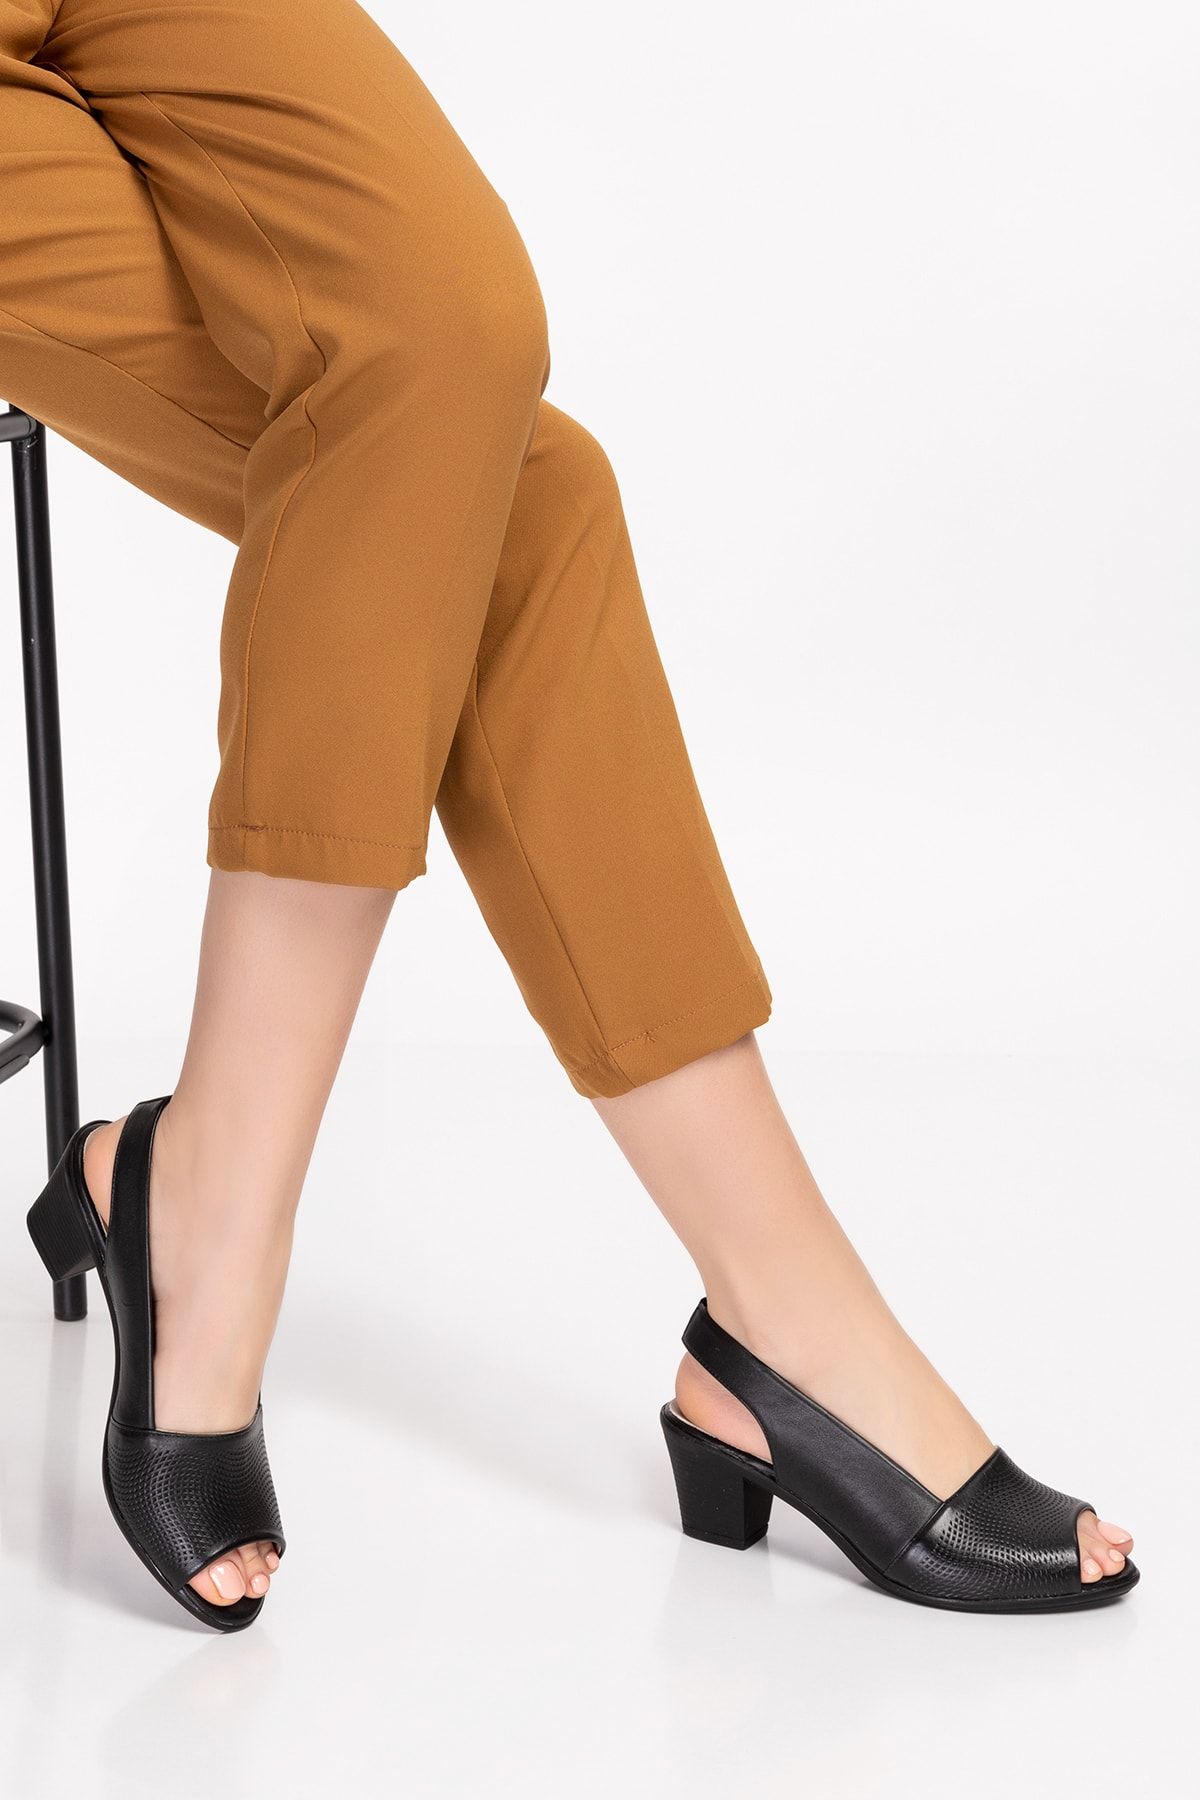 Akgün Terlik Kadın Siyah Hakiki Deri Klasik Topuklu Ayakkabı